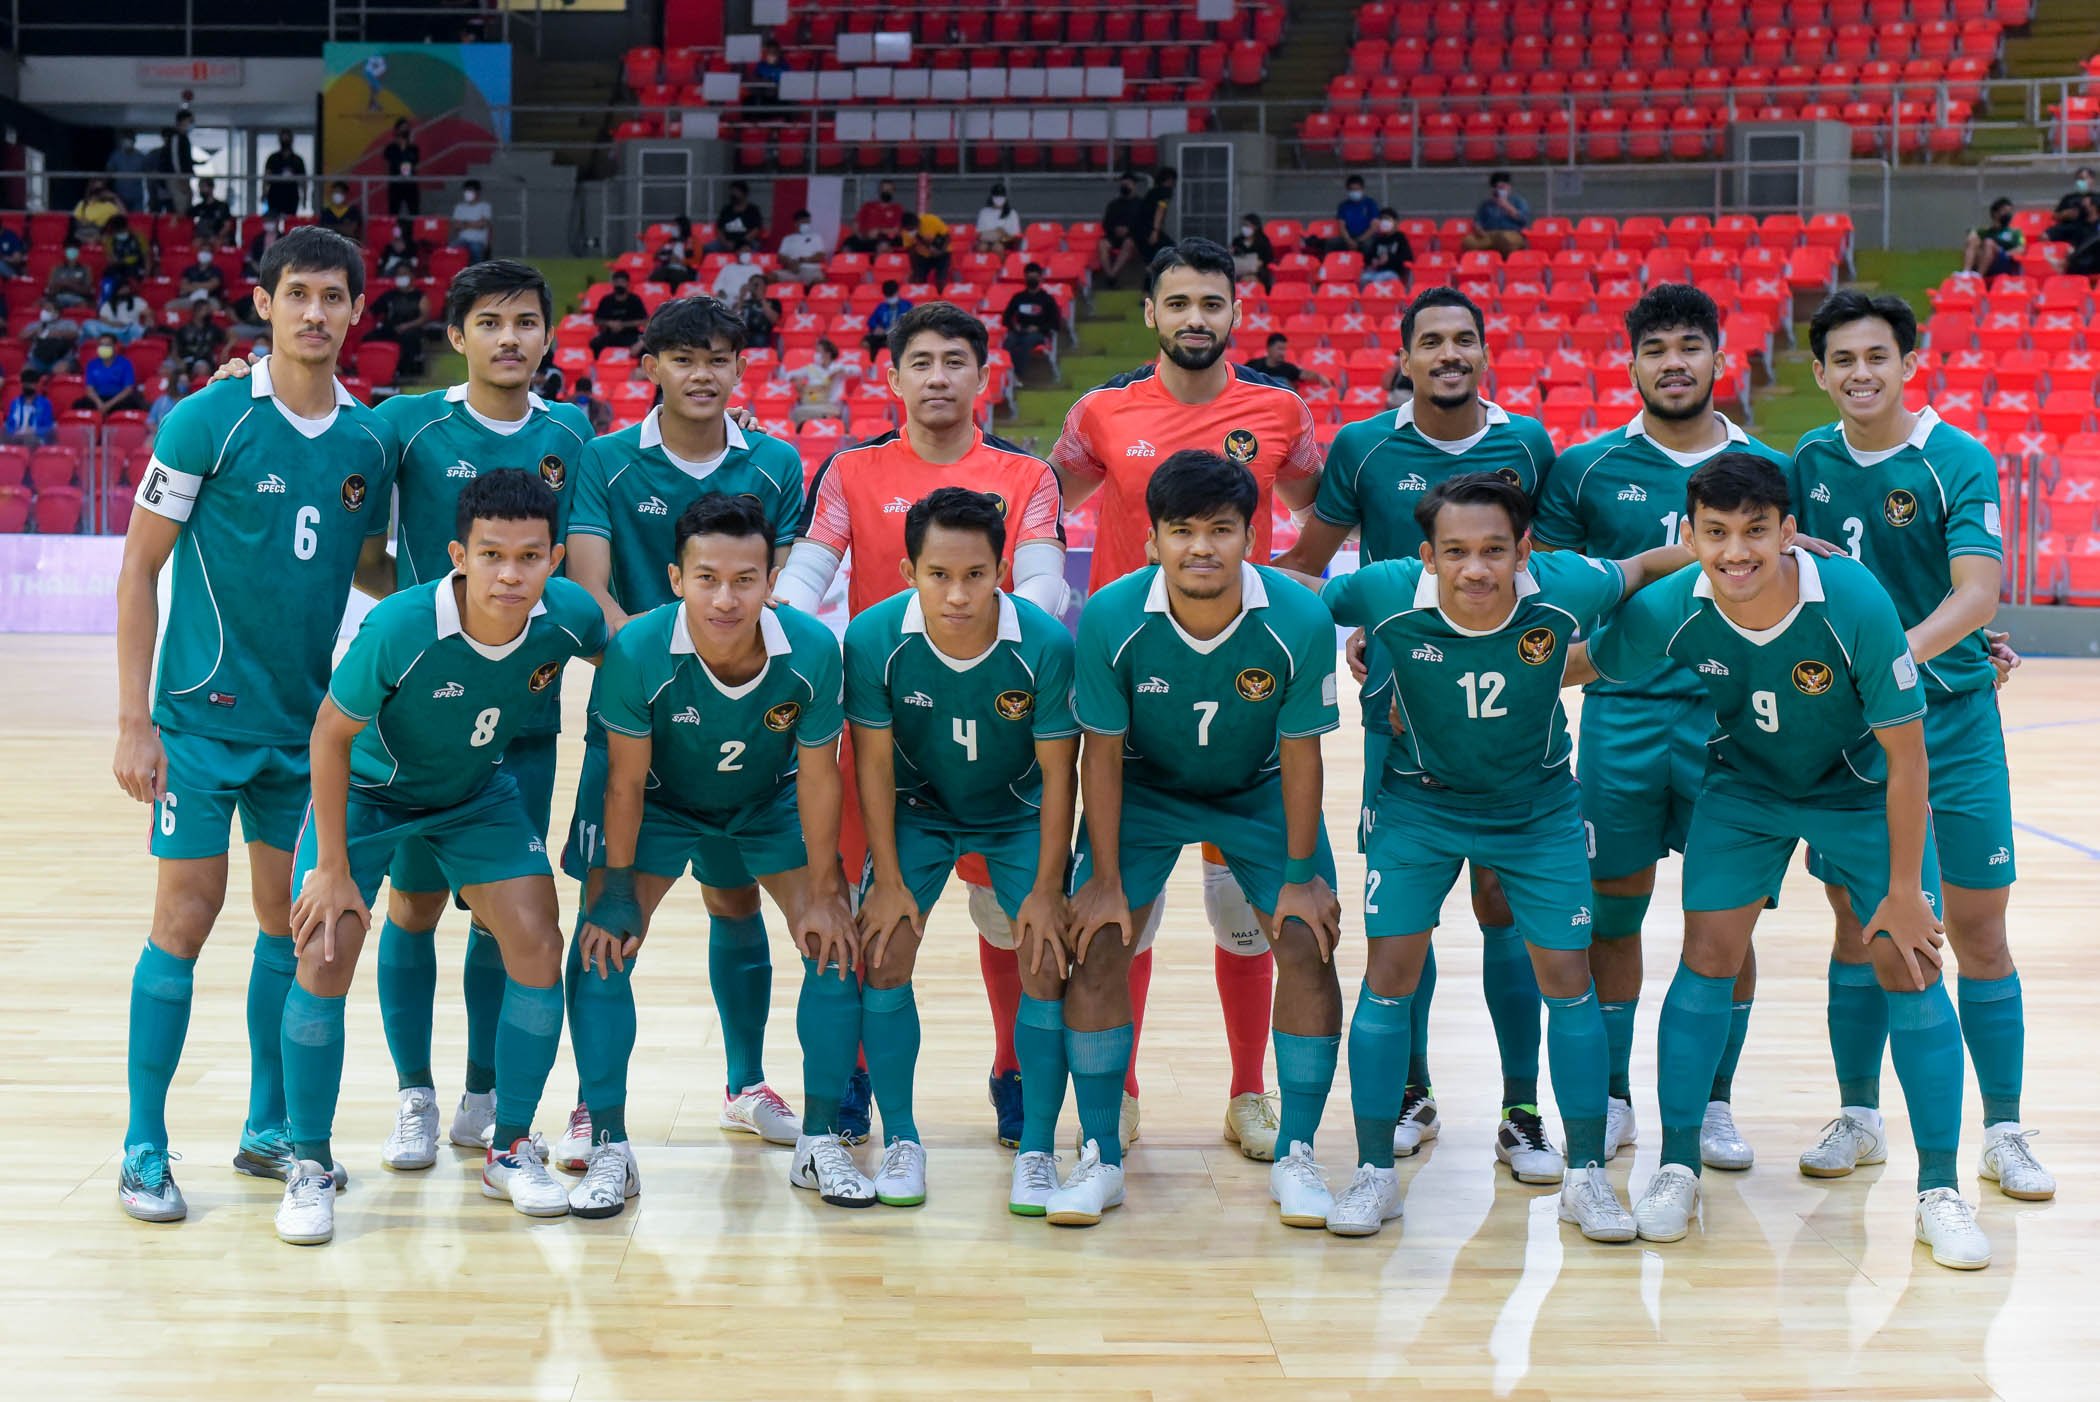 Jadwal Timnas Futsal Putra Indonesia di SEA Games 2021, Jumpa Tuan Rumah di Laga Perdana